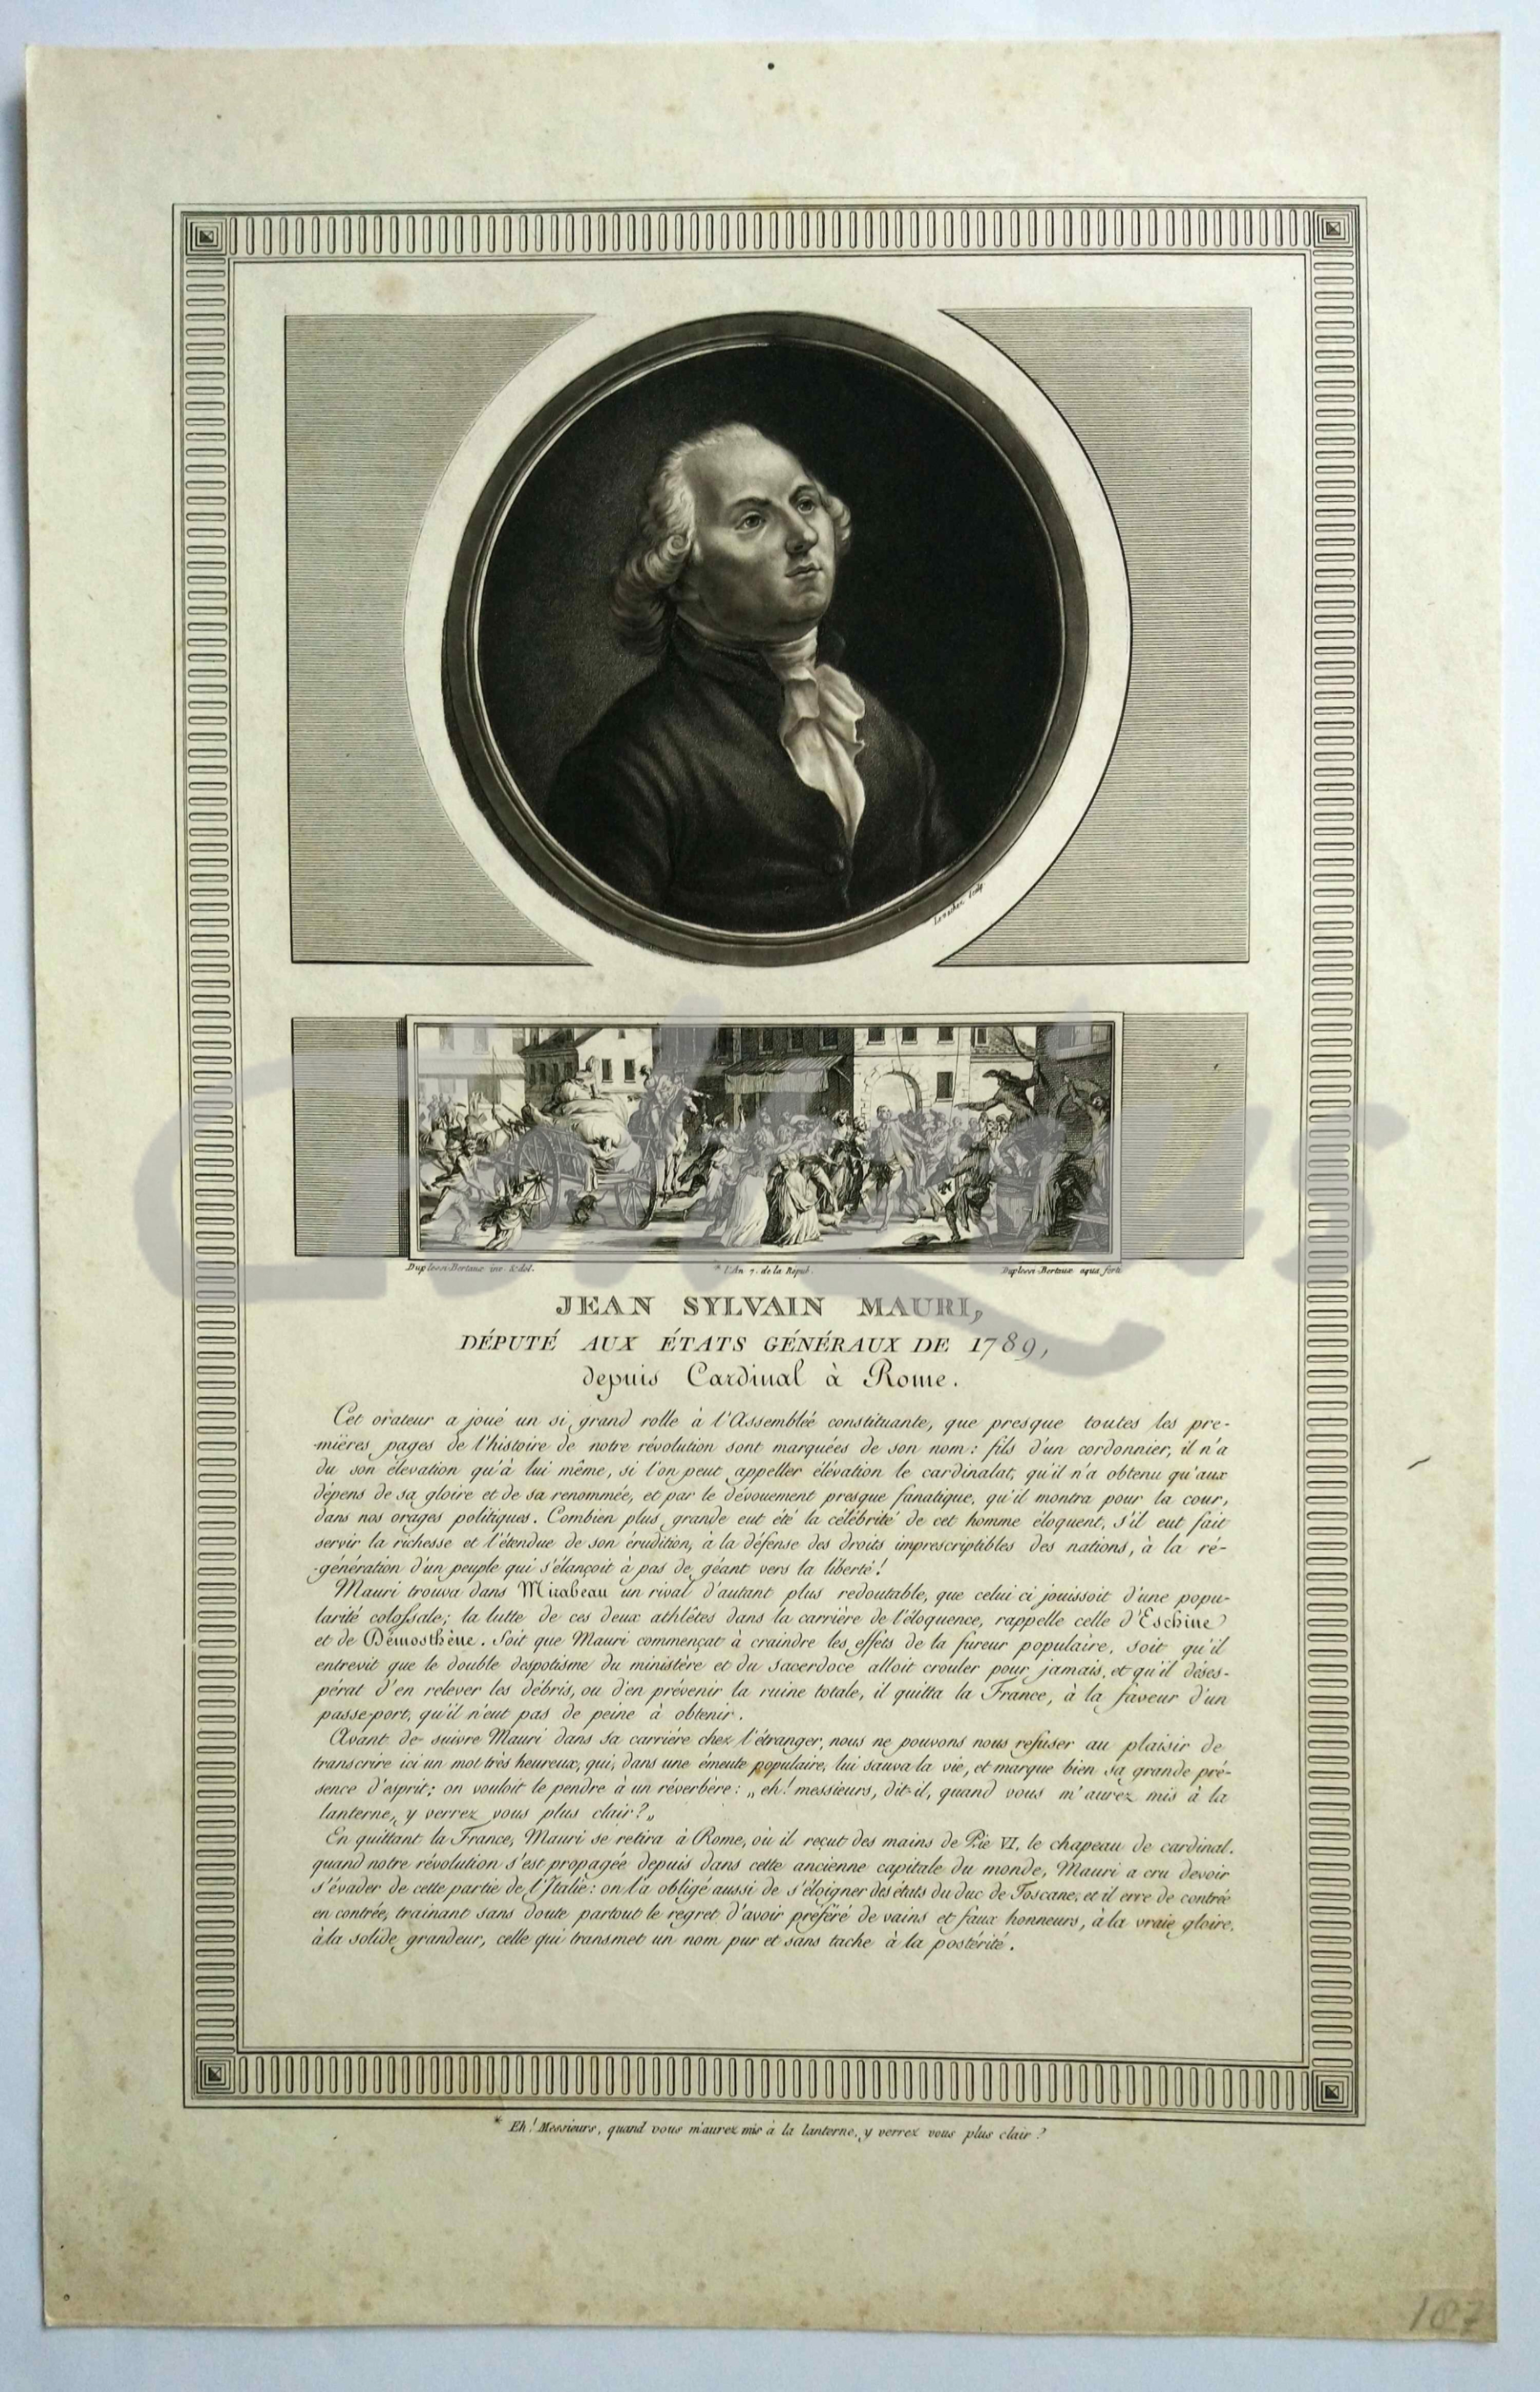 LEVACHEZ, CHARLES, Jean Sylvain Mauri, député aux états généraux de 1789